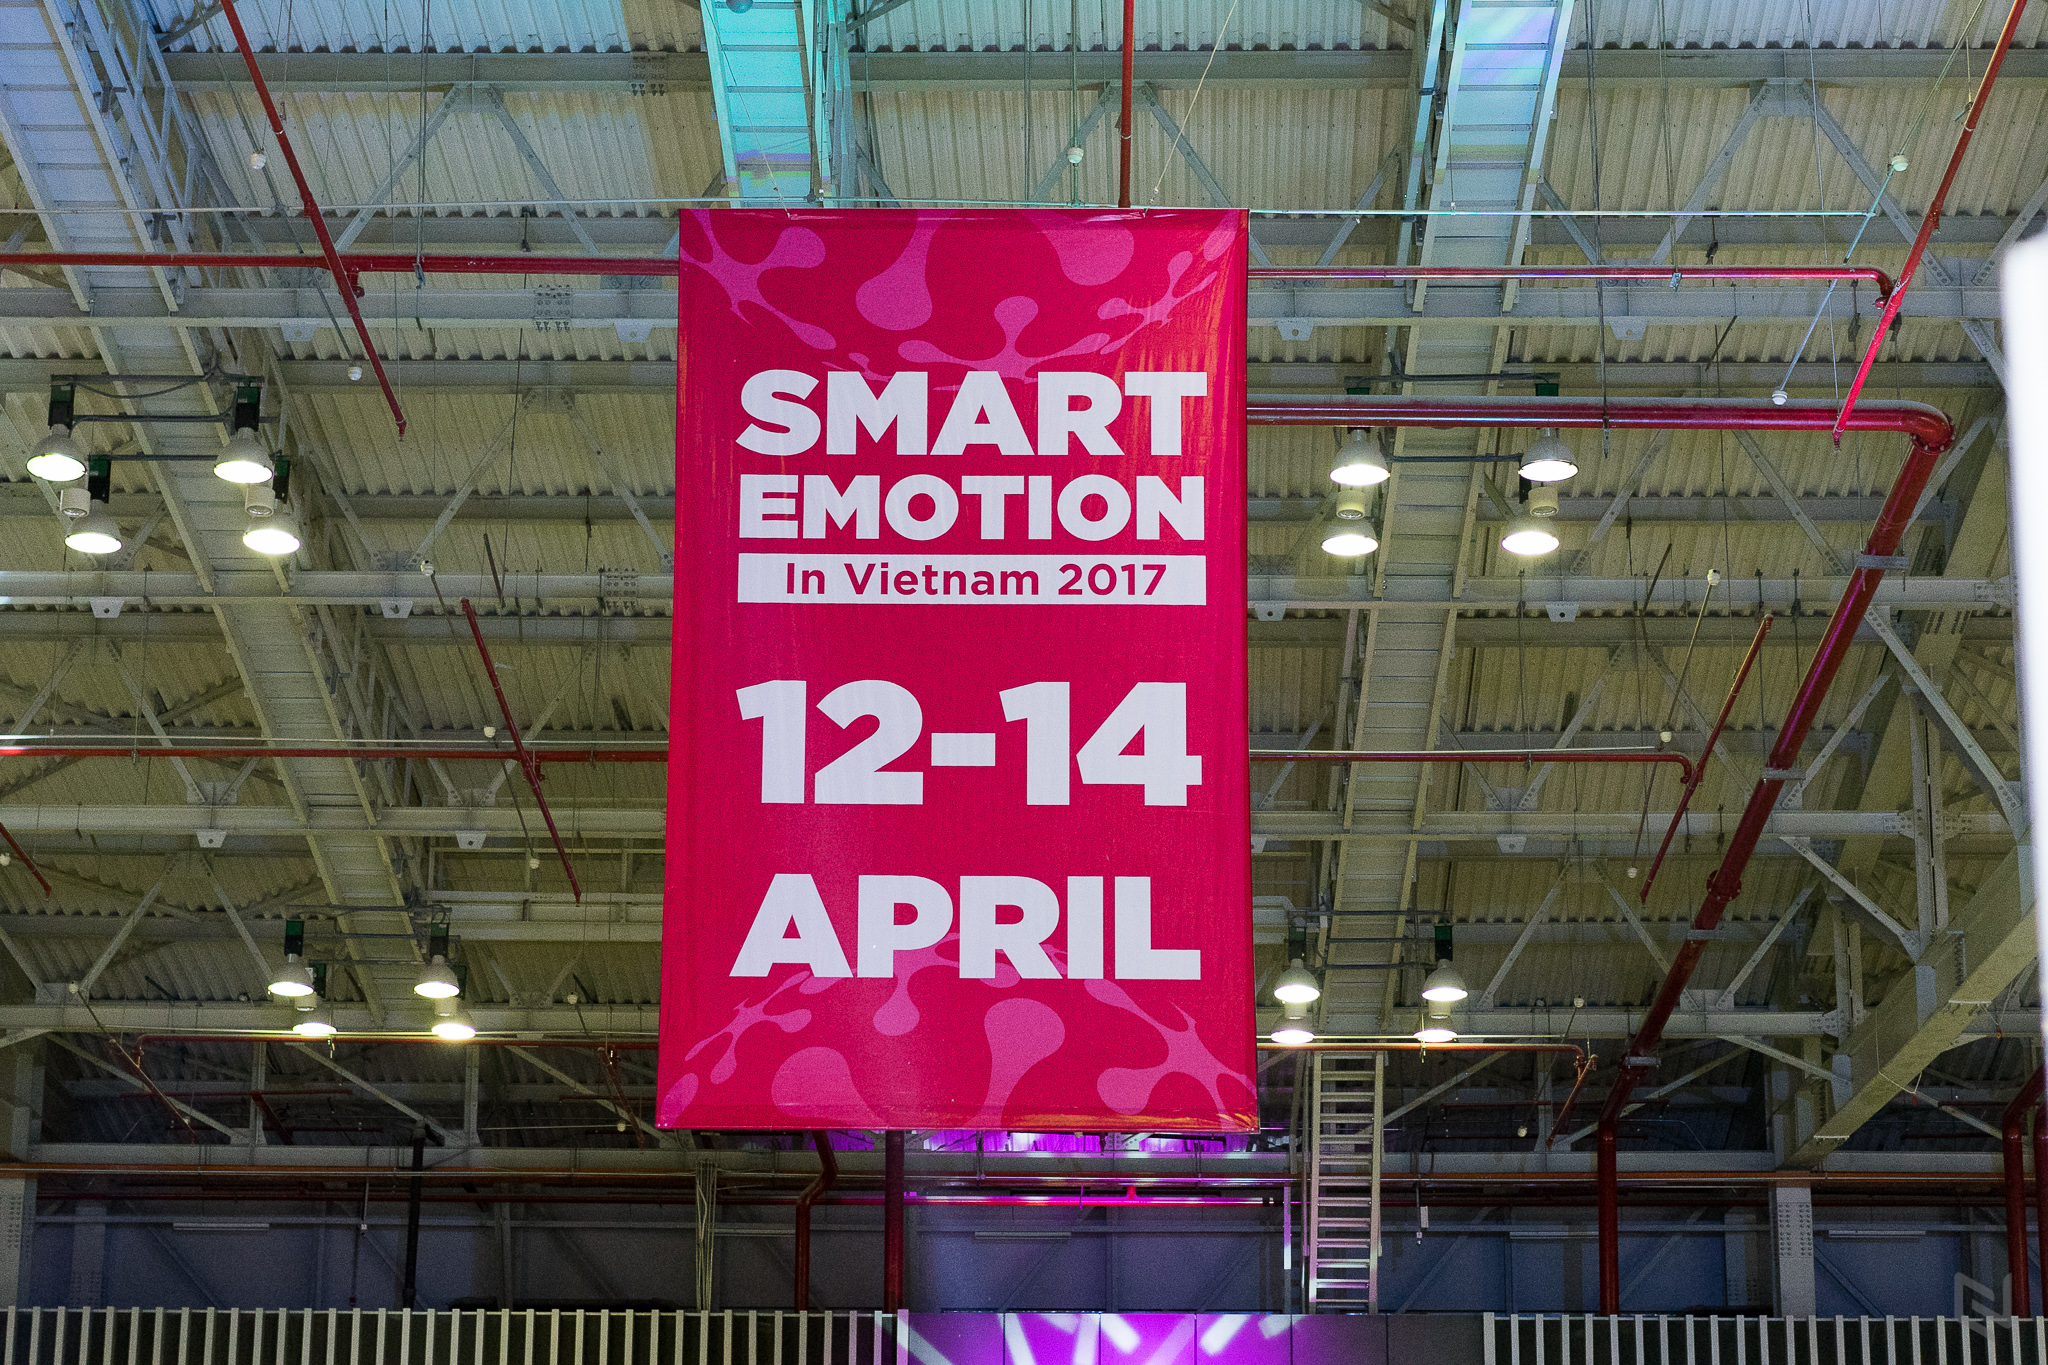 Triển lãm Smart Emotion 2017 chính thức khai mạc